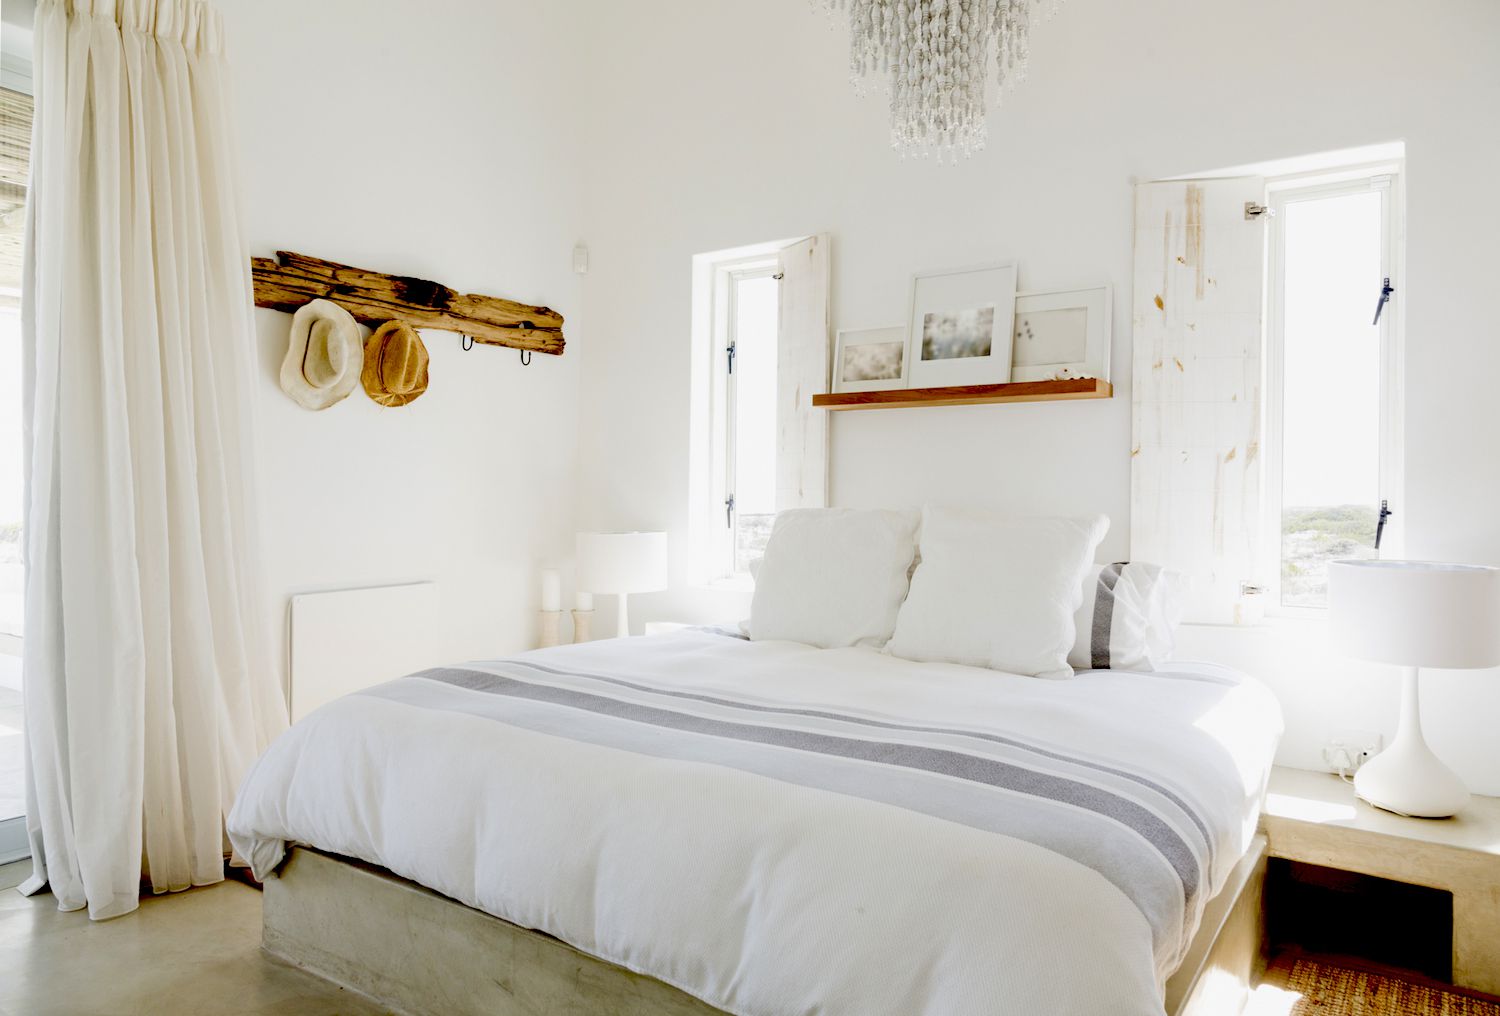 Funktionale Schlafzimmerideen für die Wohnung - wählen Sie praktische Lösungen